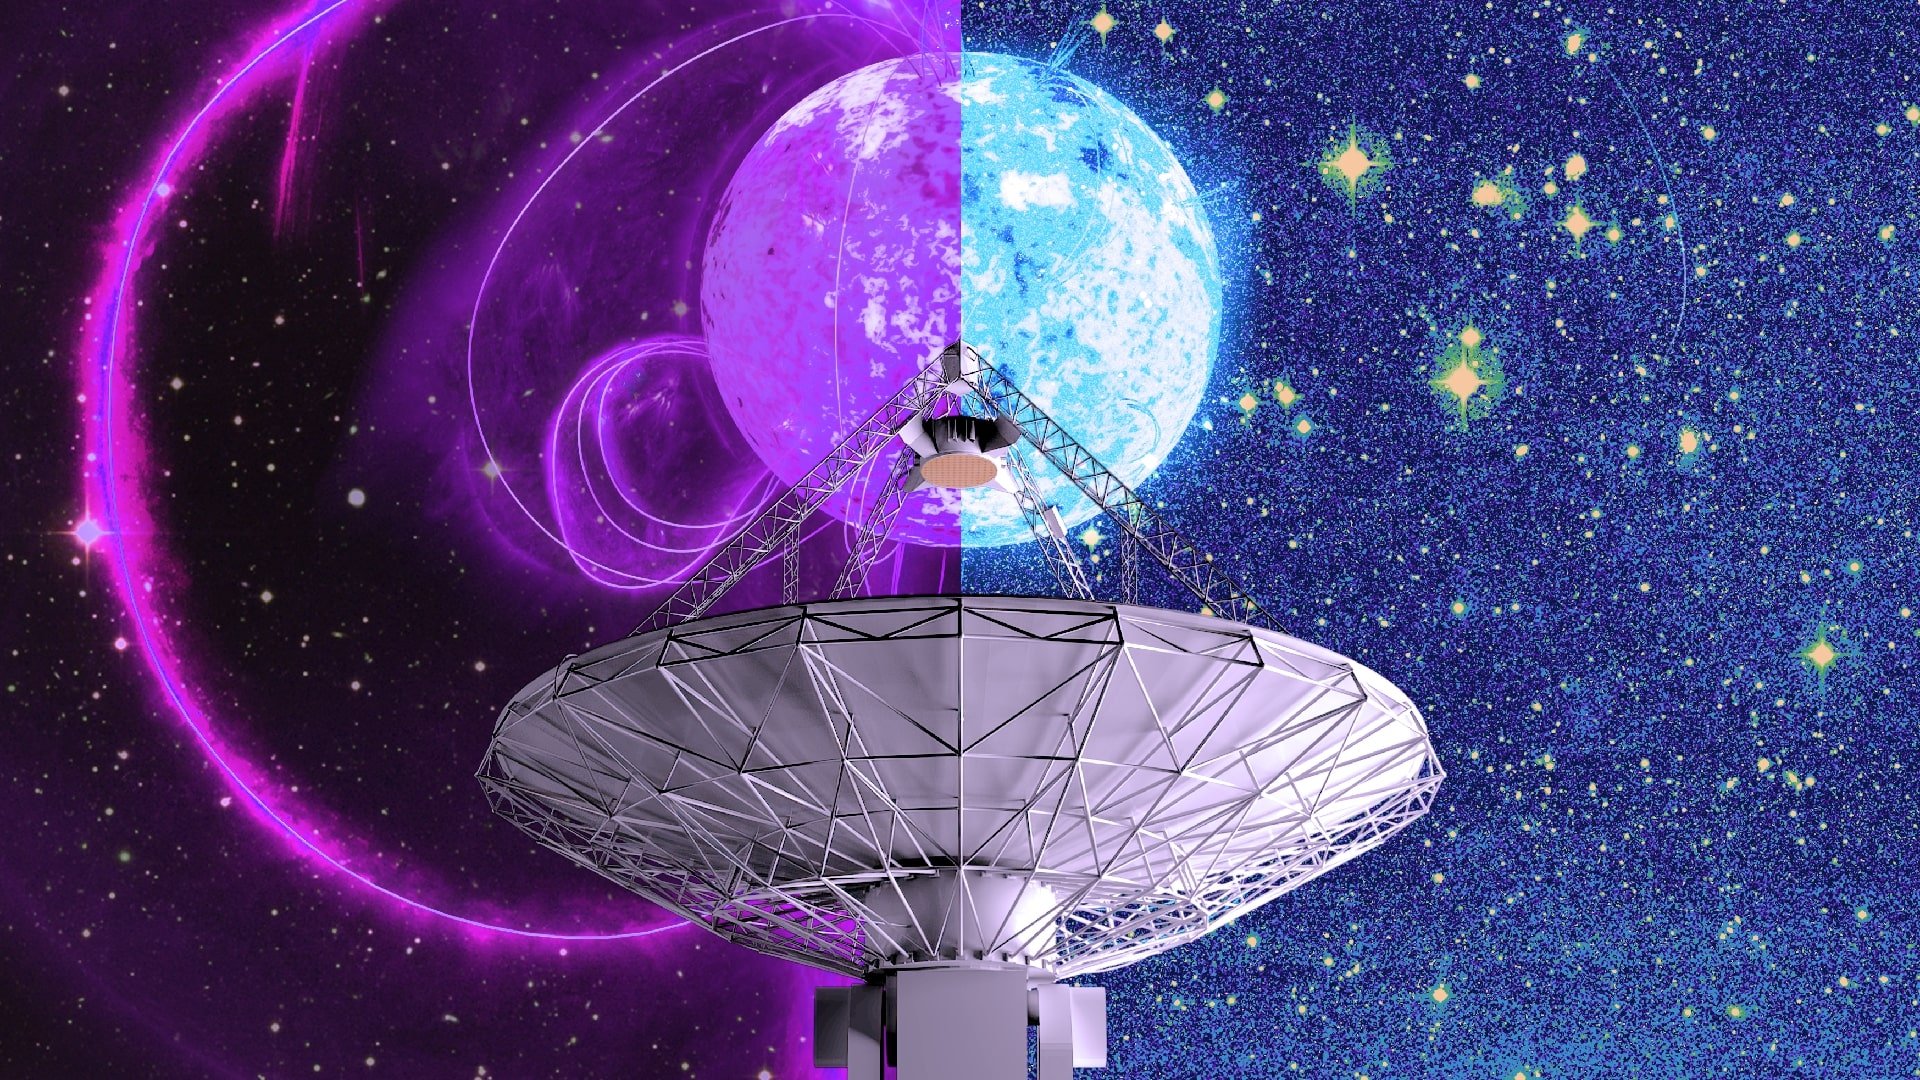 Para descobrir o recorde da possível estrela de nêutrons, os cientistas coletaram dados com os telescópios ASKAP e MeerKAT.